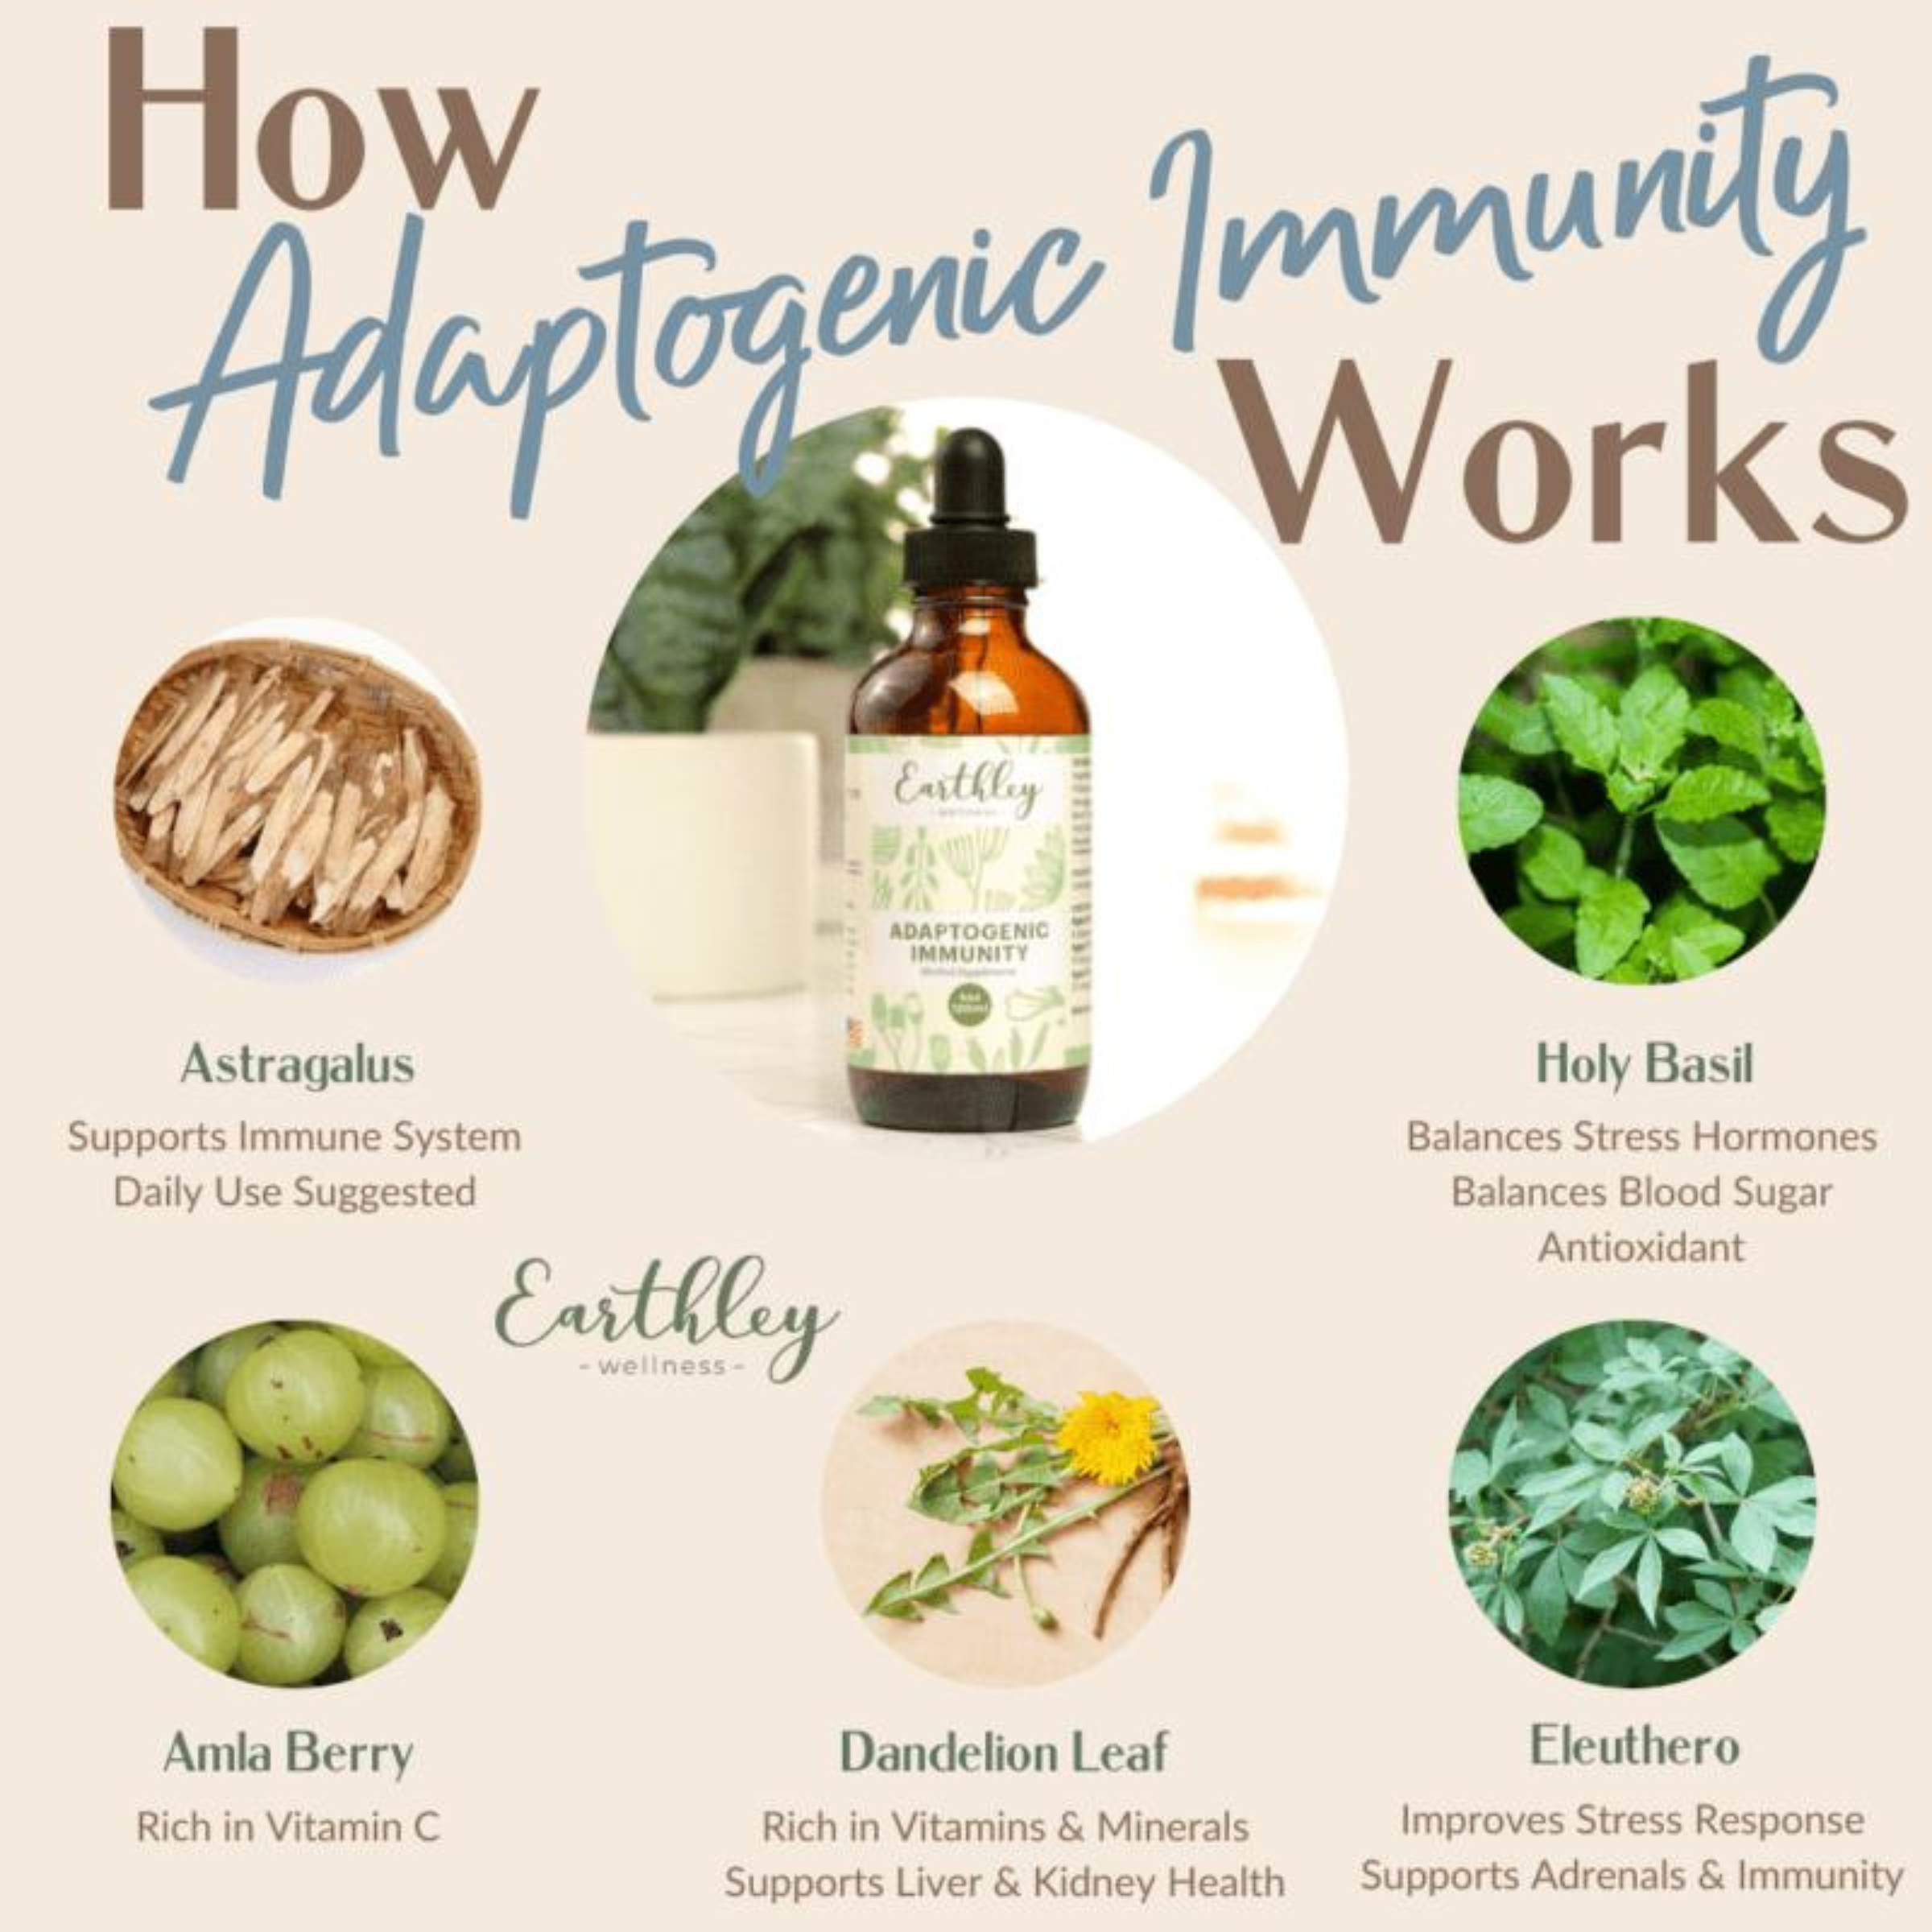 Adaptogenic Immunity